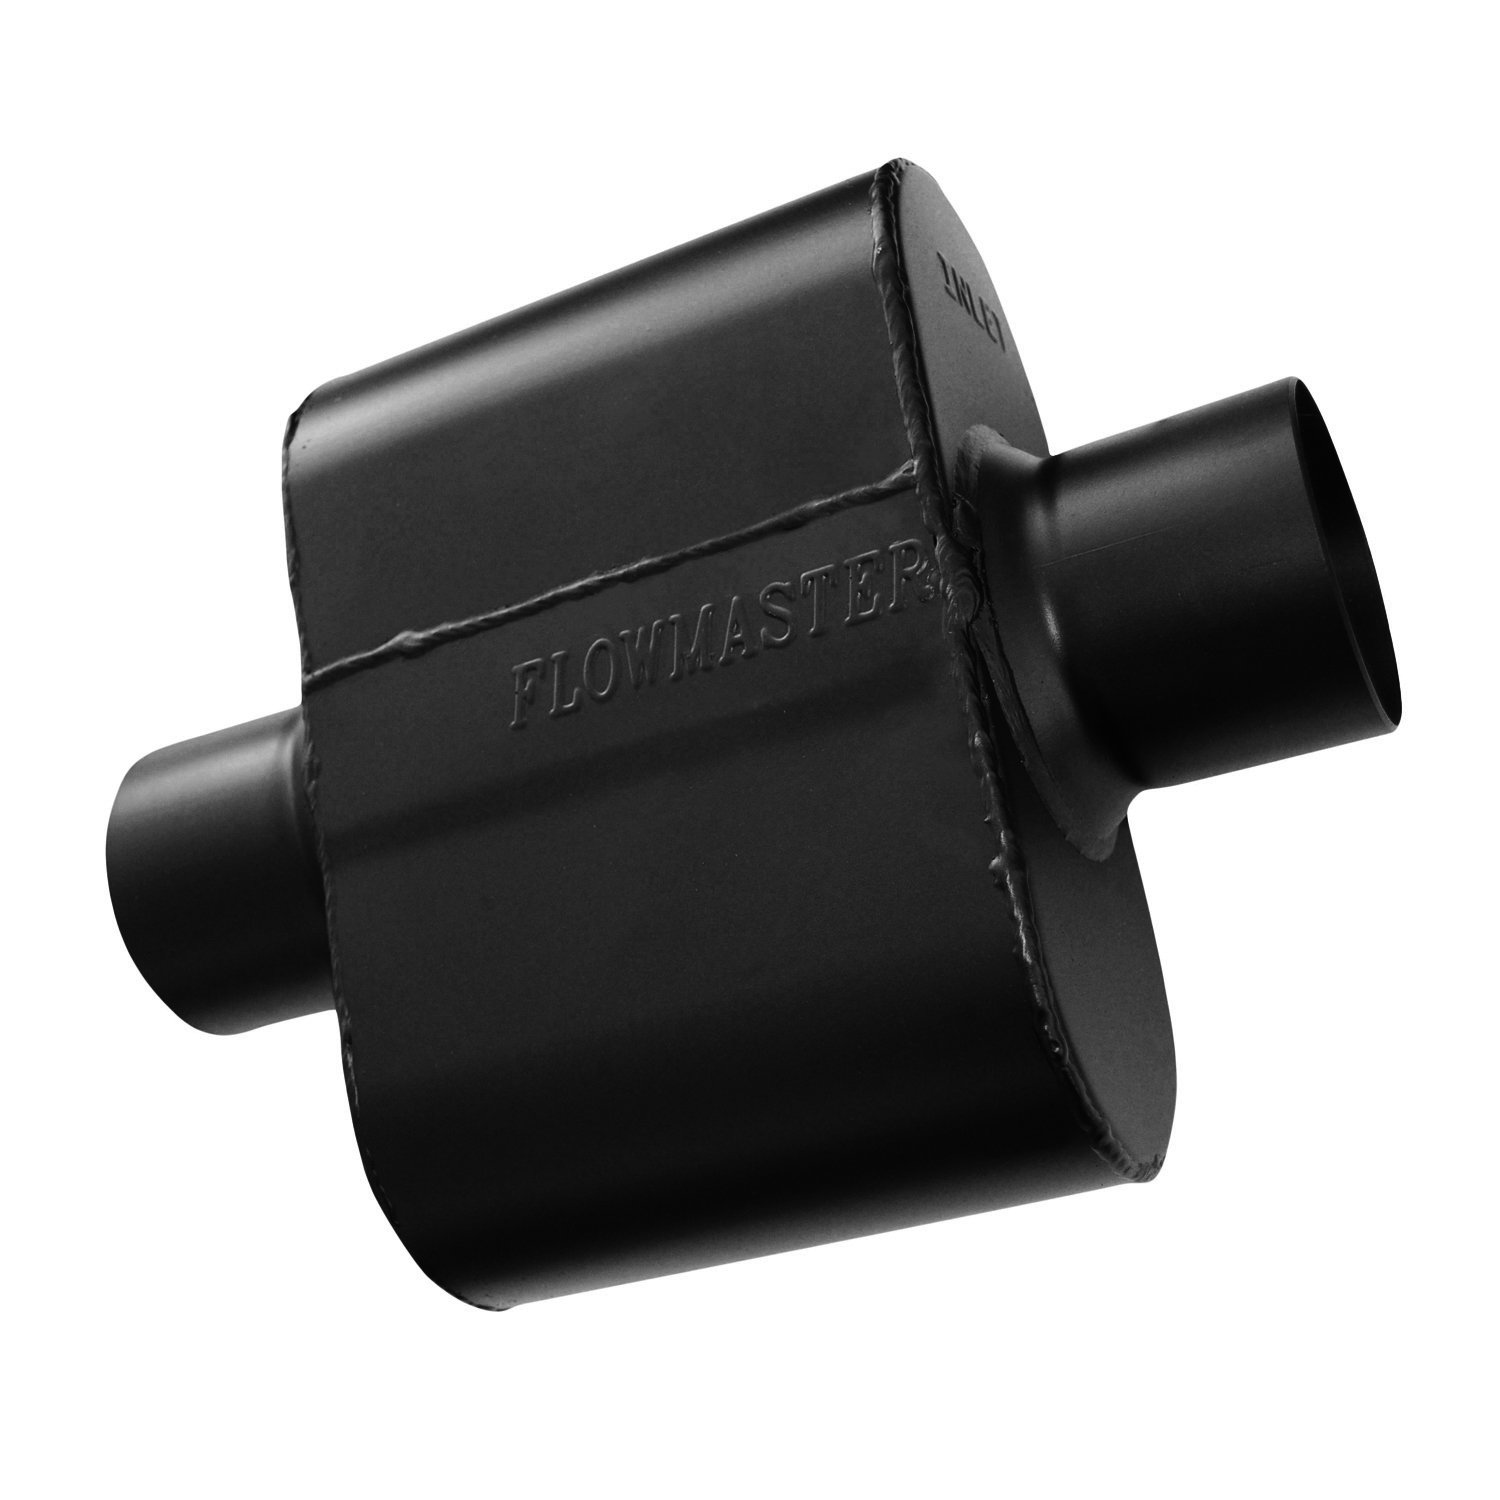 Flowmaster 843015 Super 10 Schalldämpfer 409S - 3.00 Center IN / 3.00 Center OUT - Aggressive Sound von Flowmaster